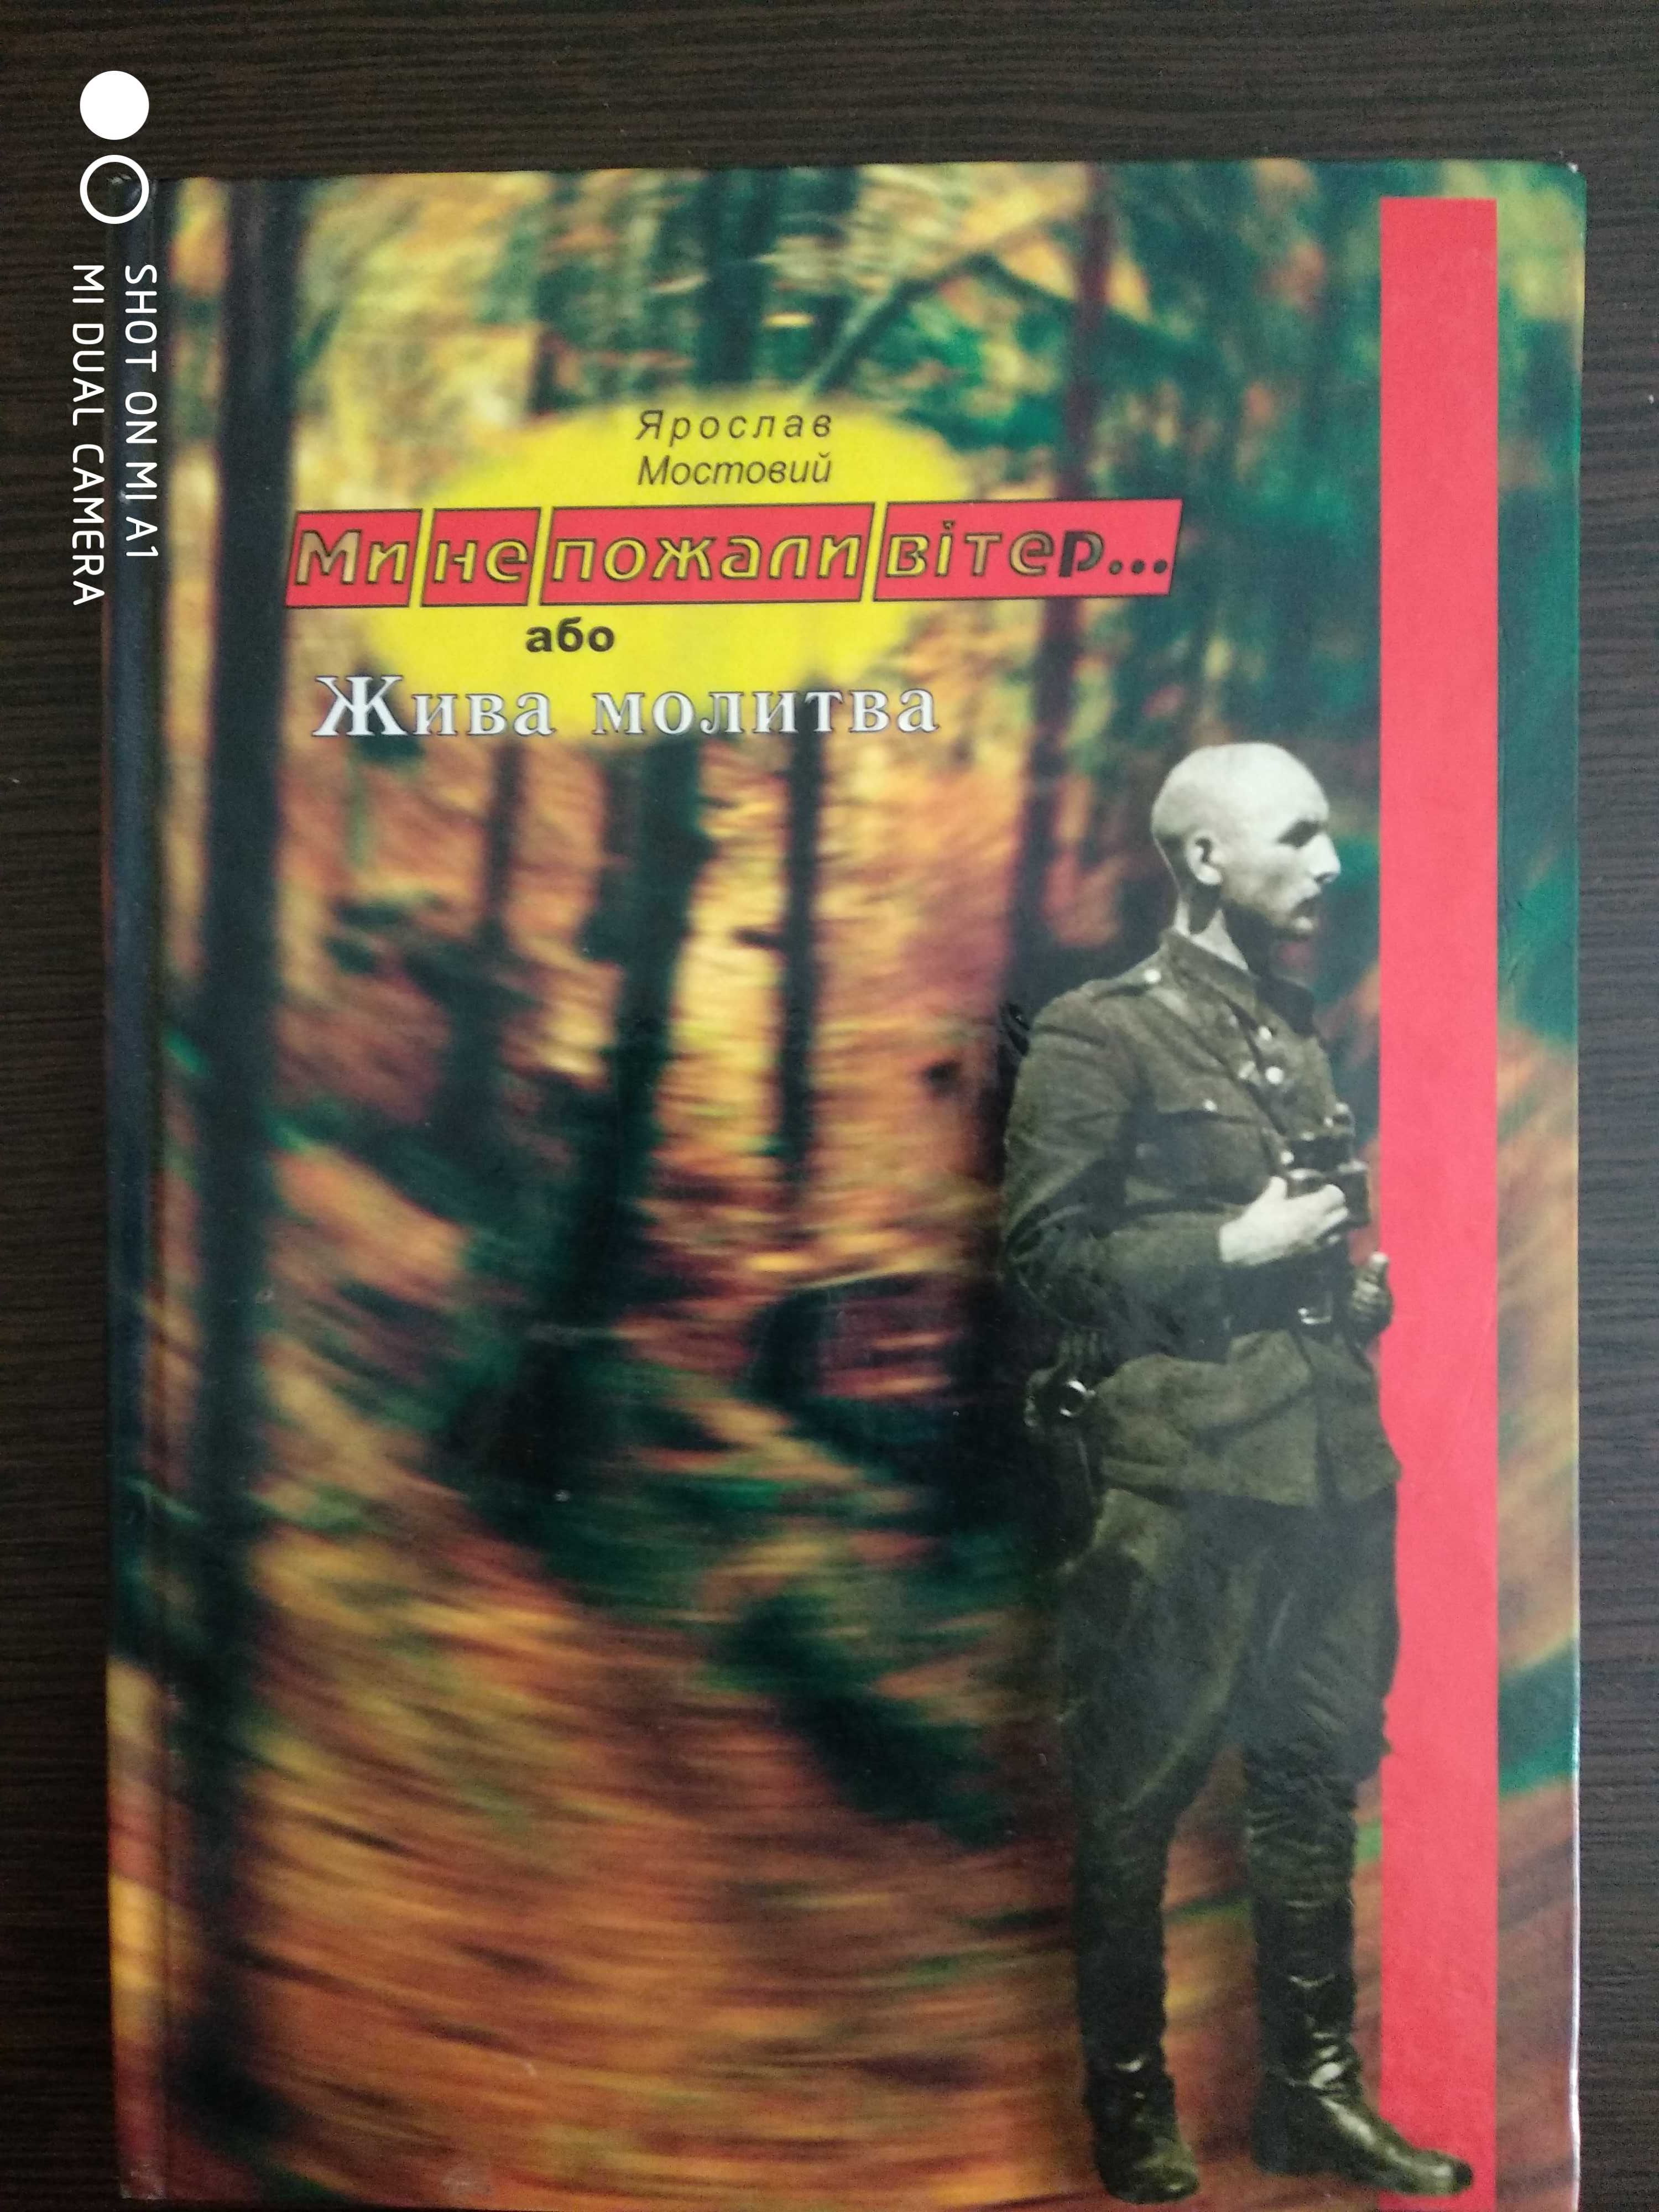 Історично-документальна література ( УПА, Чорнобиль, розвідка)